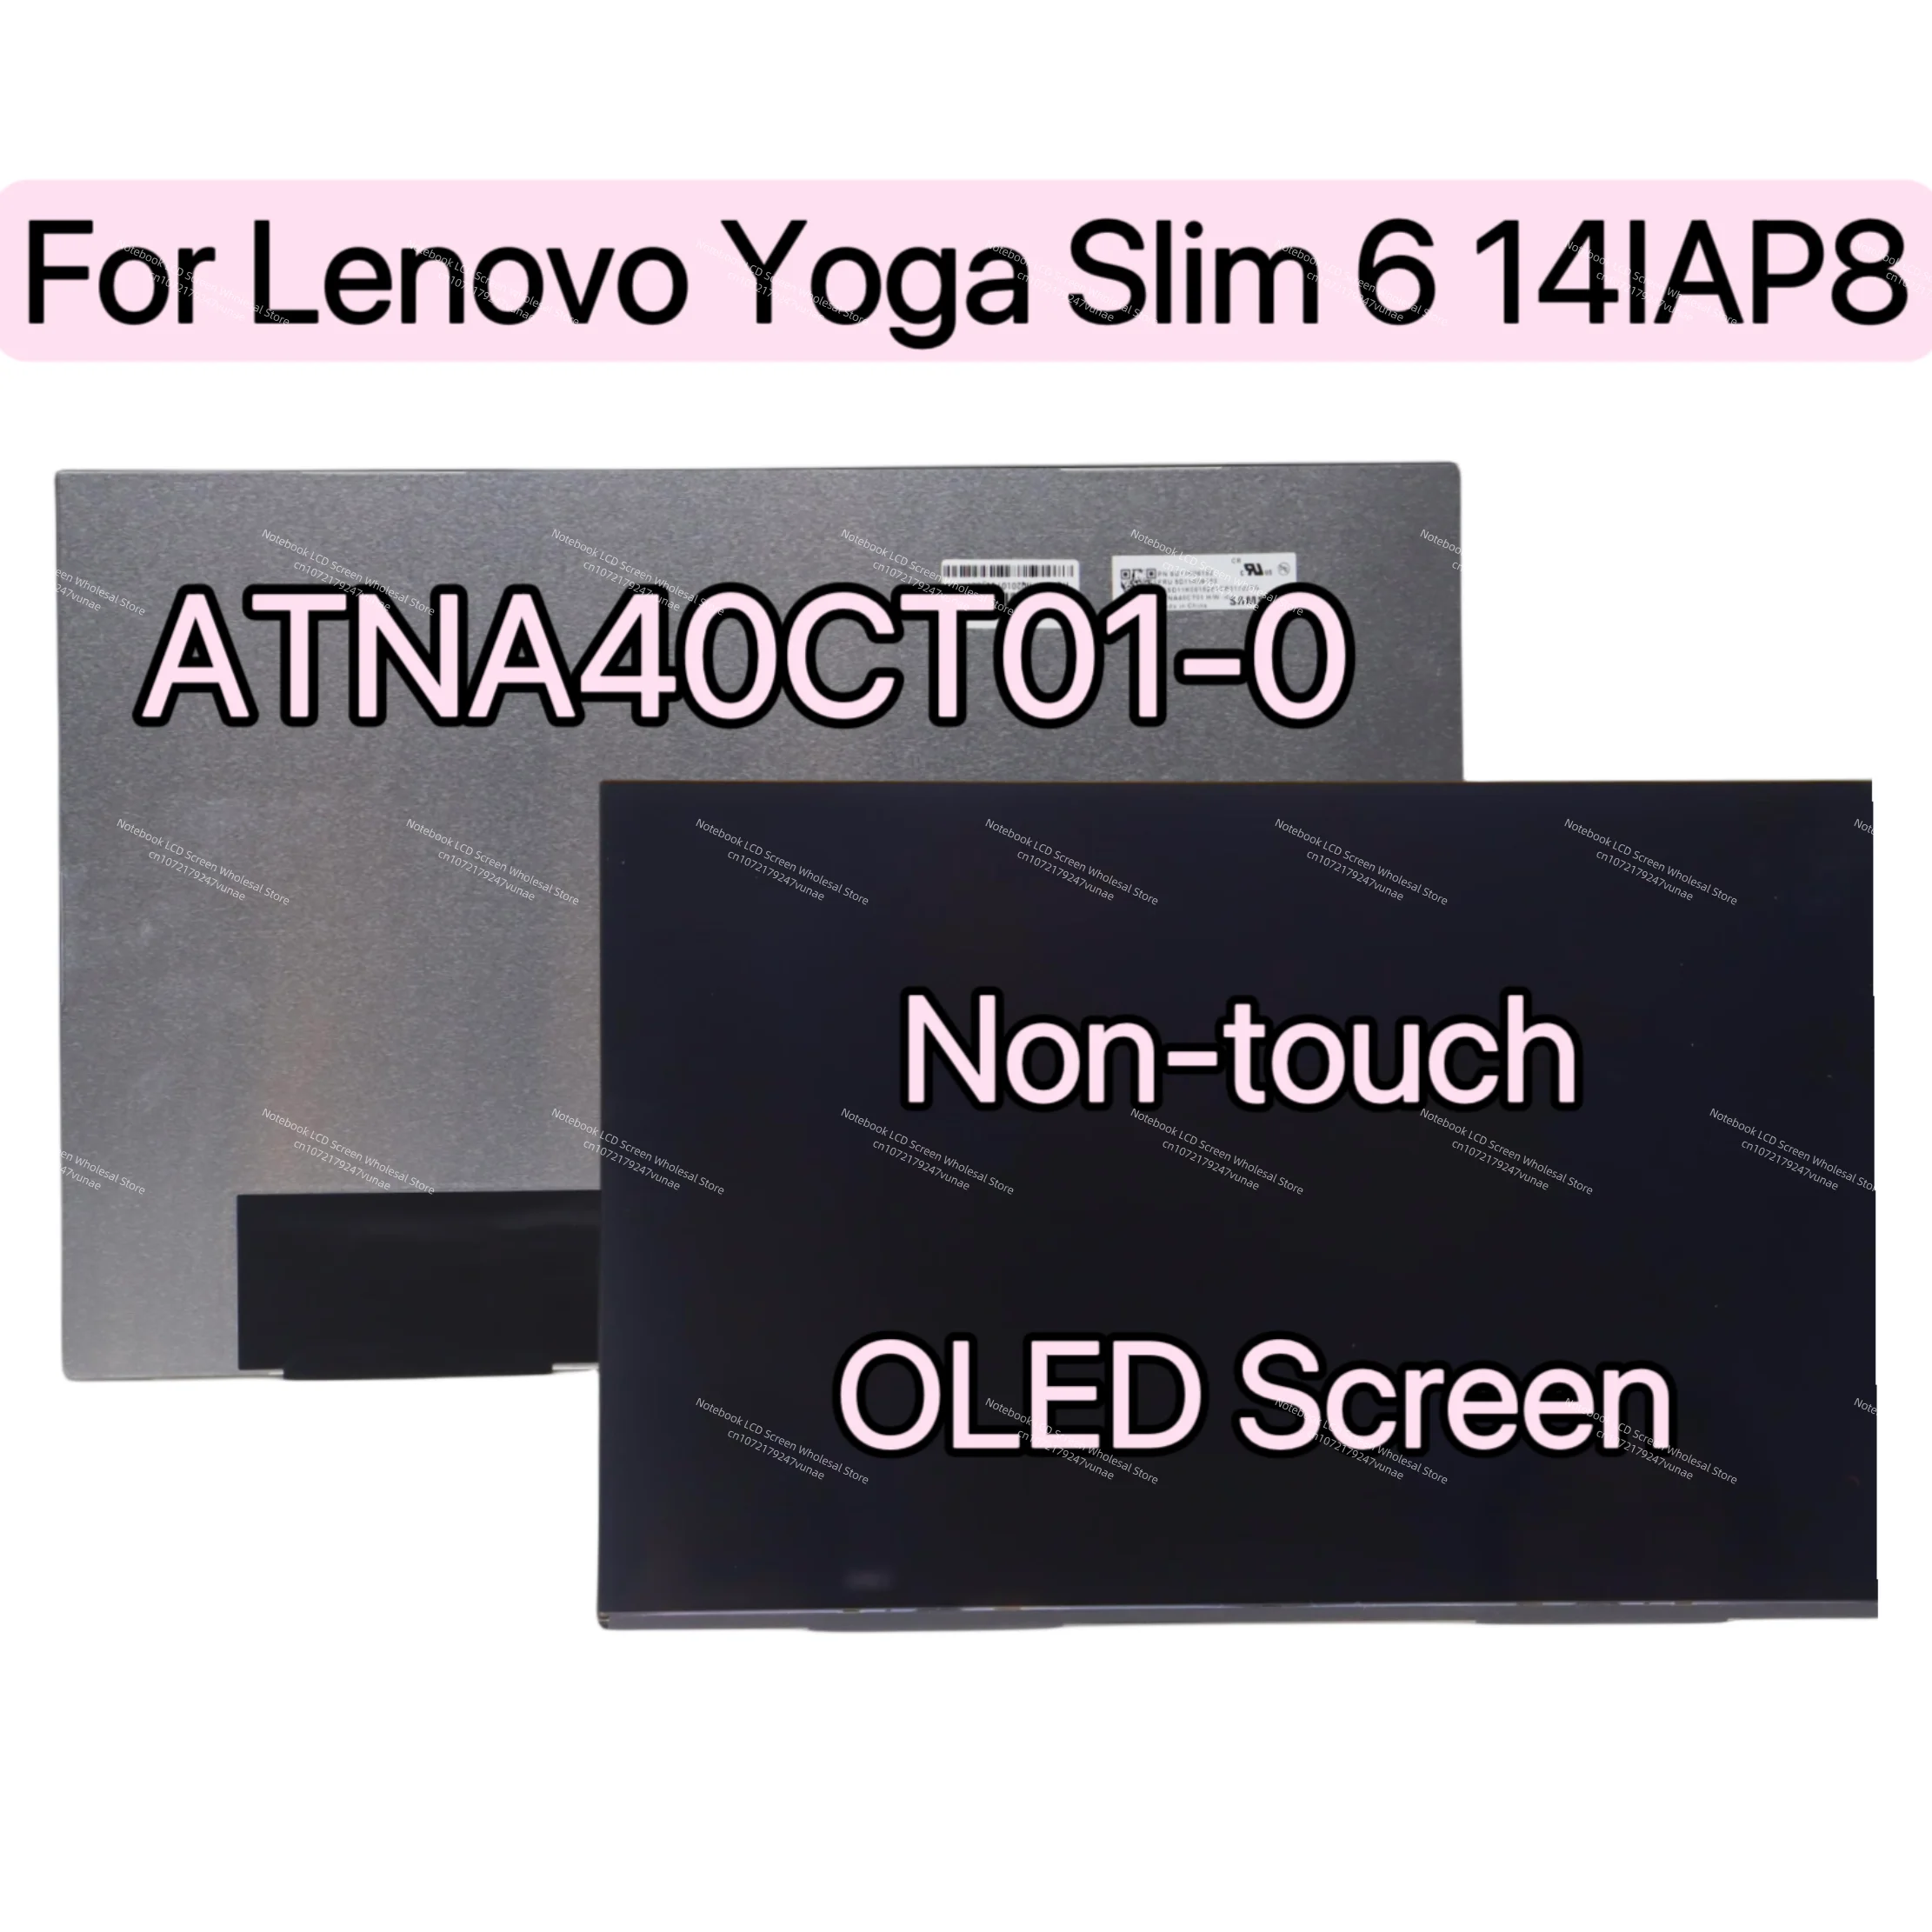  䰡  6 14IAP8 OLED ũ ATNA40CT01-0  ġ ÷ LCD, WUXGA ATNA40CT01 LCD г, 5D11K06153 Ÿ 82WU